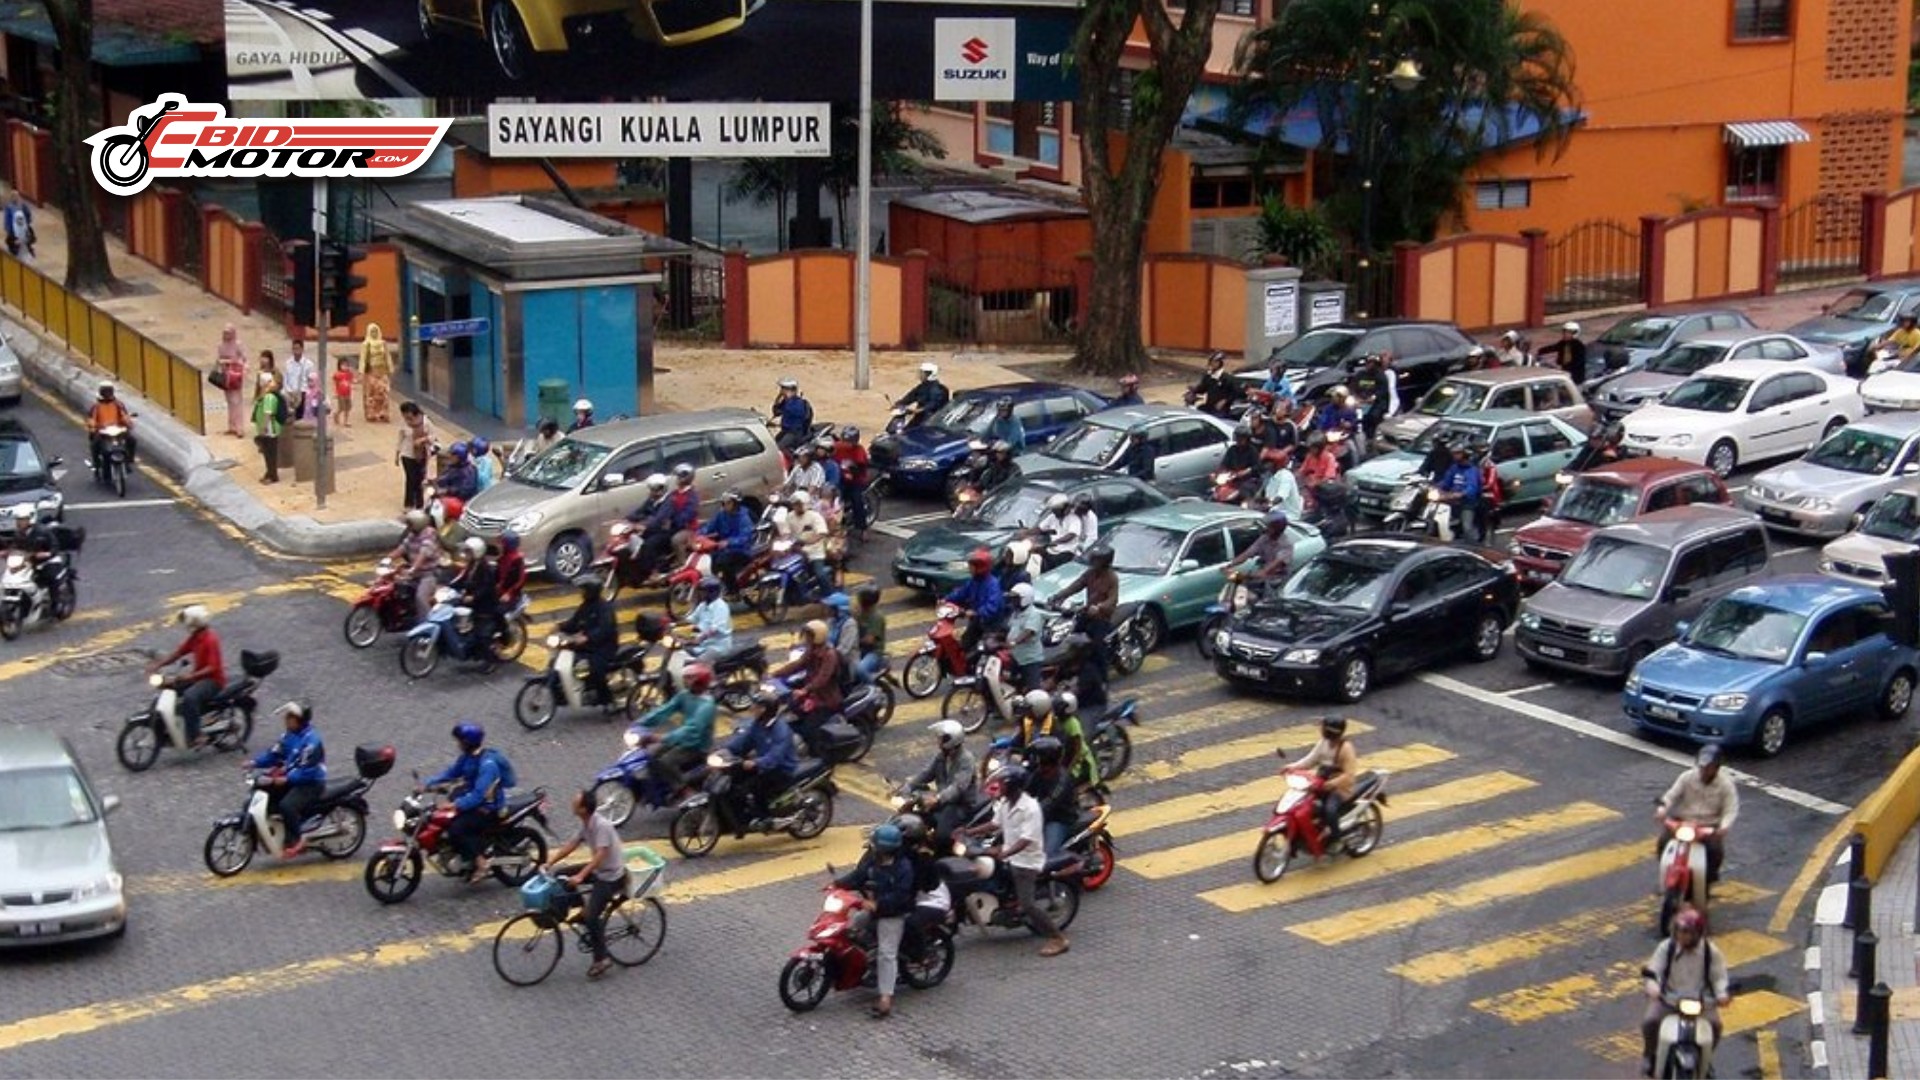 Malaysia No.4 Paling Ramai Pengguna Motosikal Di Dunia! Rupanya Negara Ini Dapat No.1!